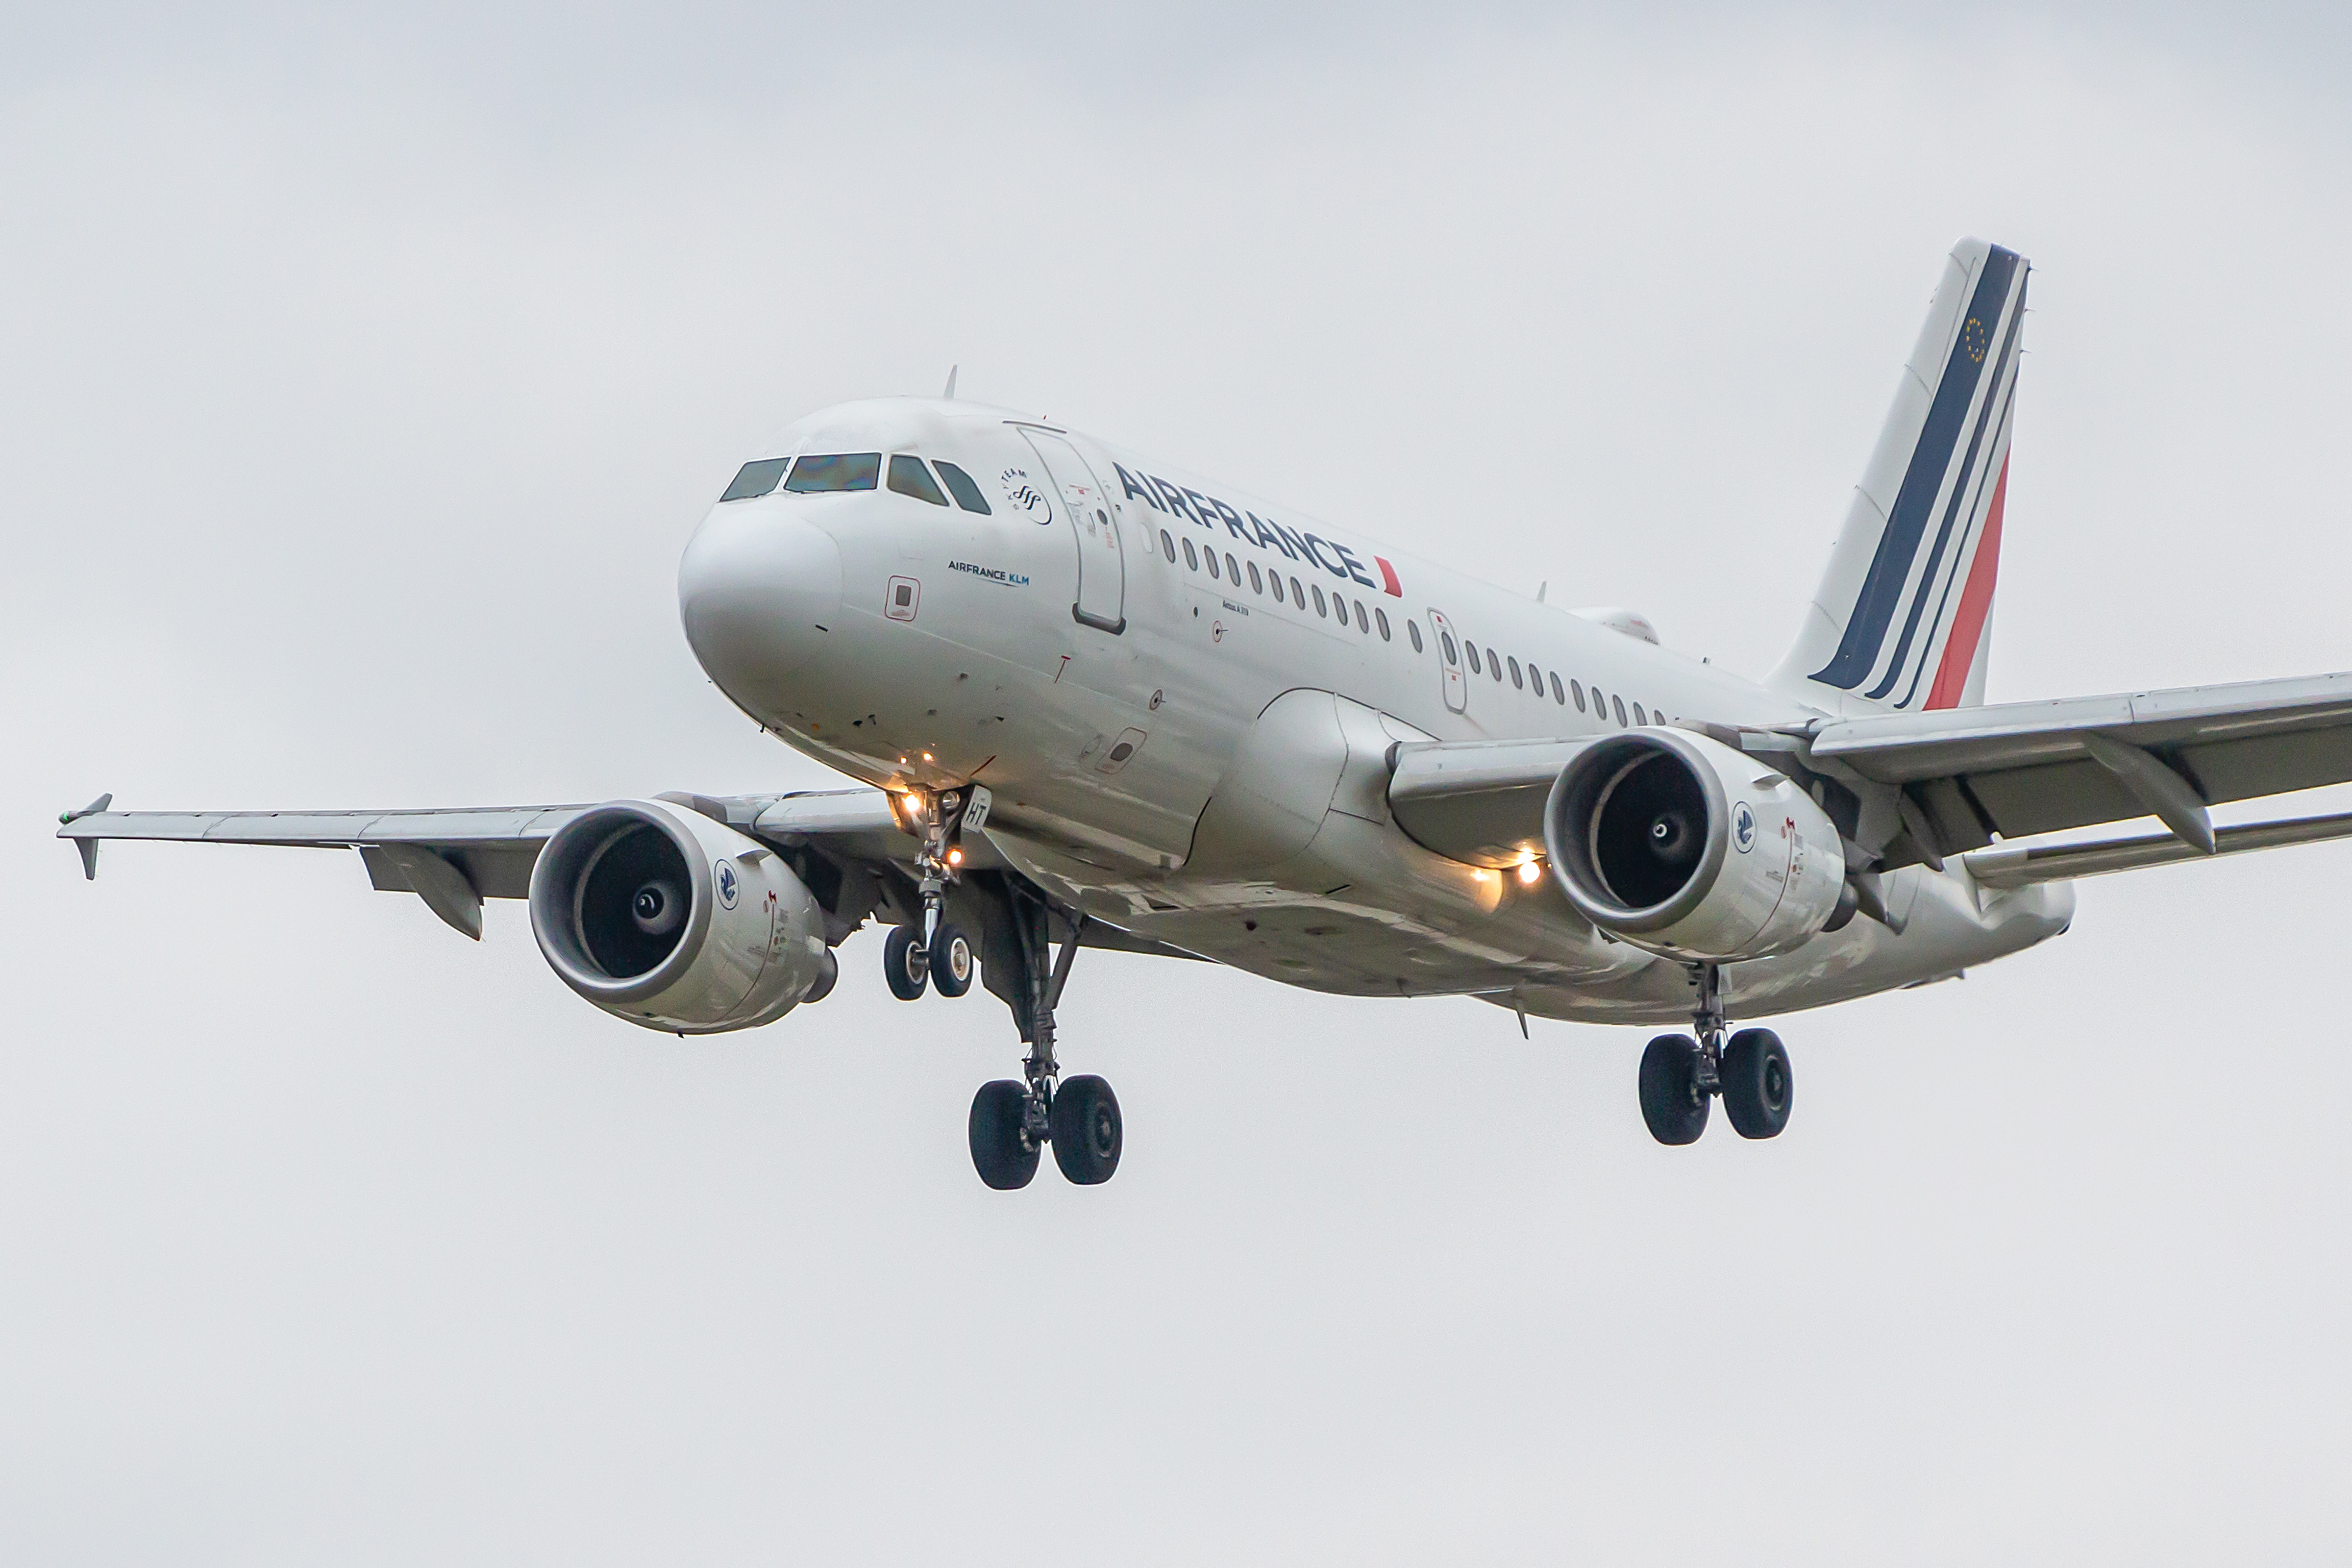 Habib war an Bord eines Air-France-Fluges von Paris nach Toronto